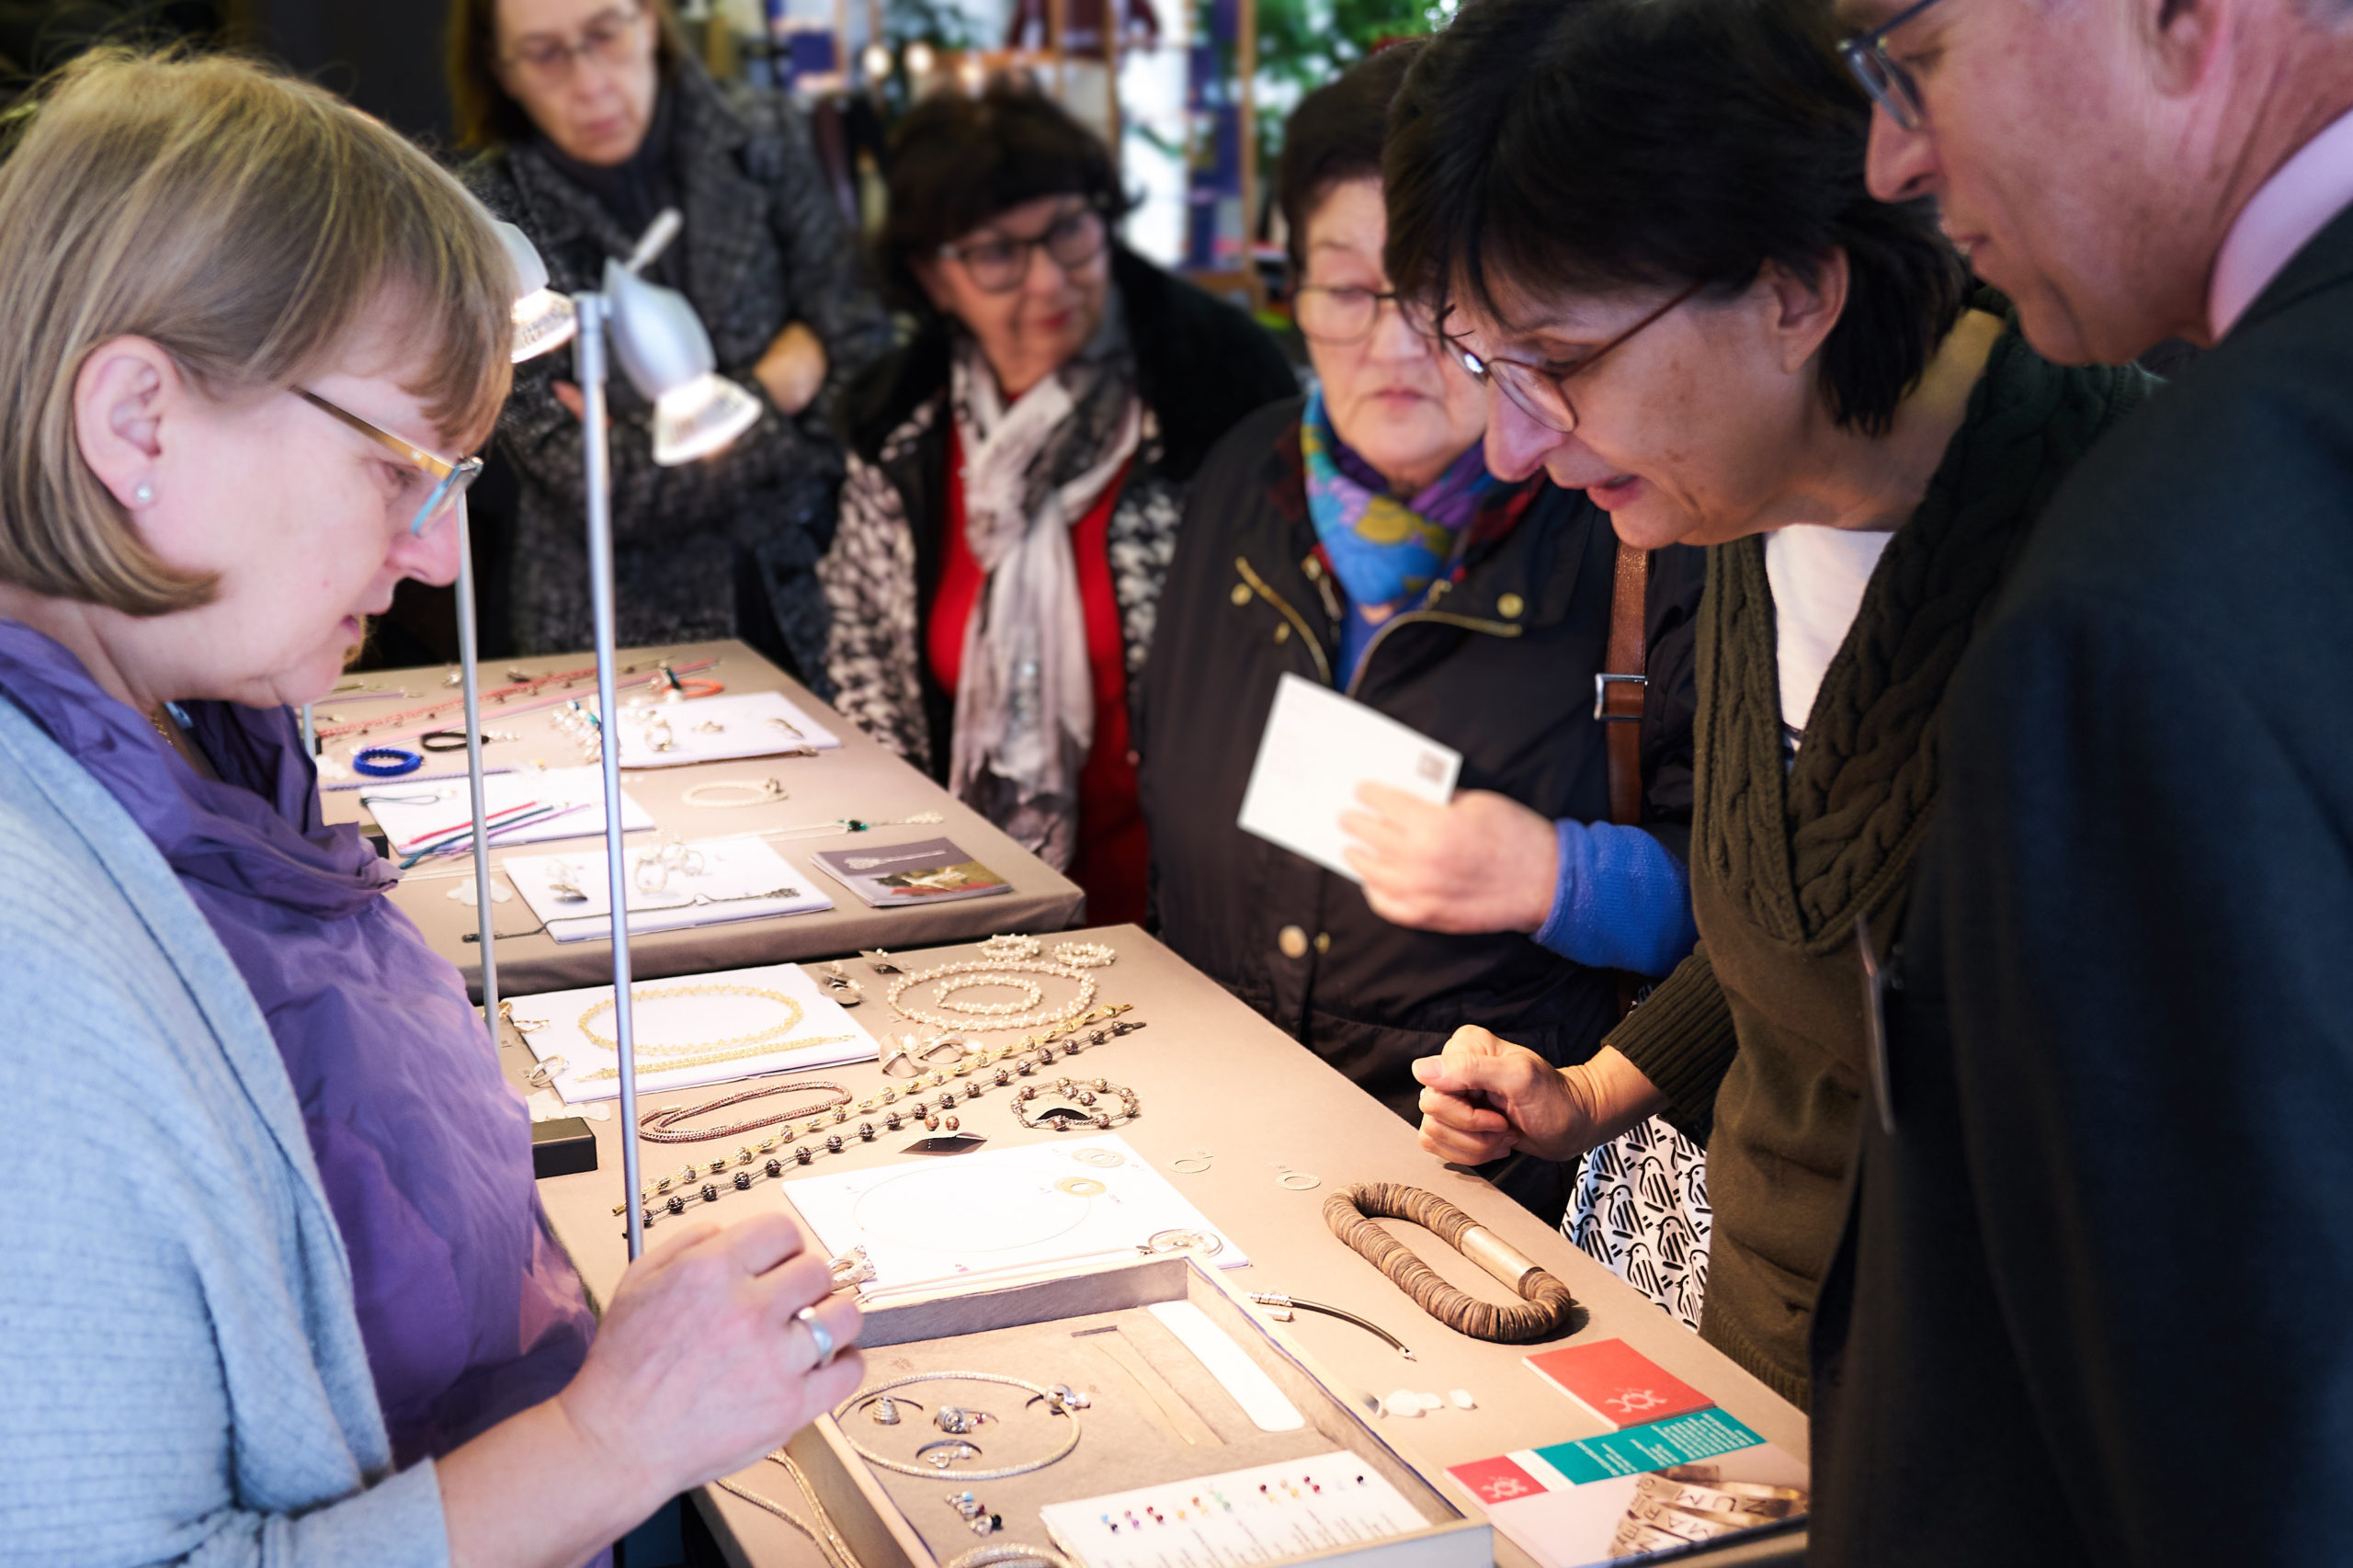 Besucher schauen sich die Kunsthandwerke bei der Handgemacht-Ausstellung an.